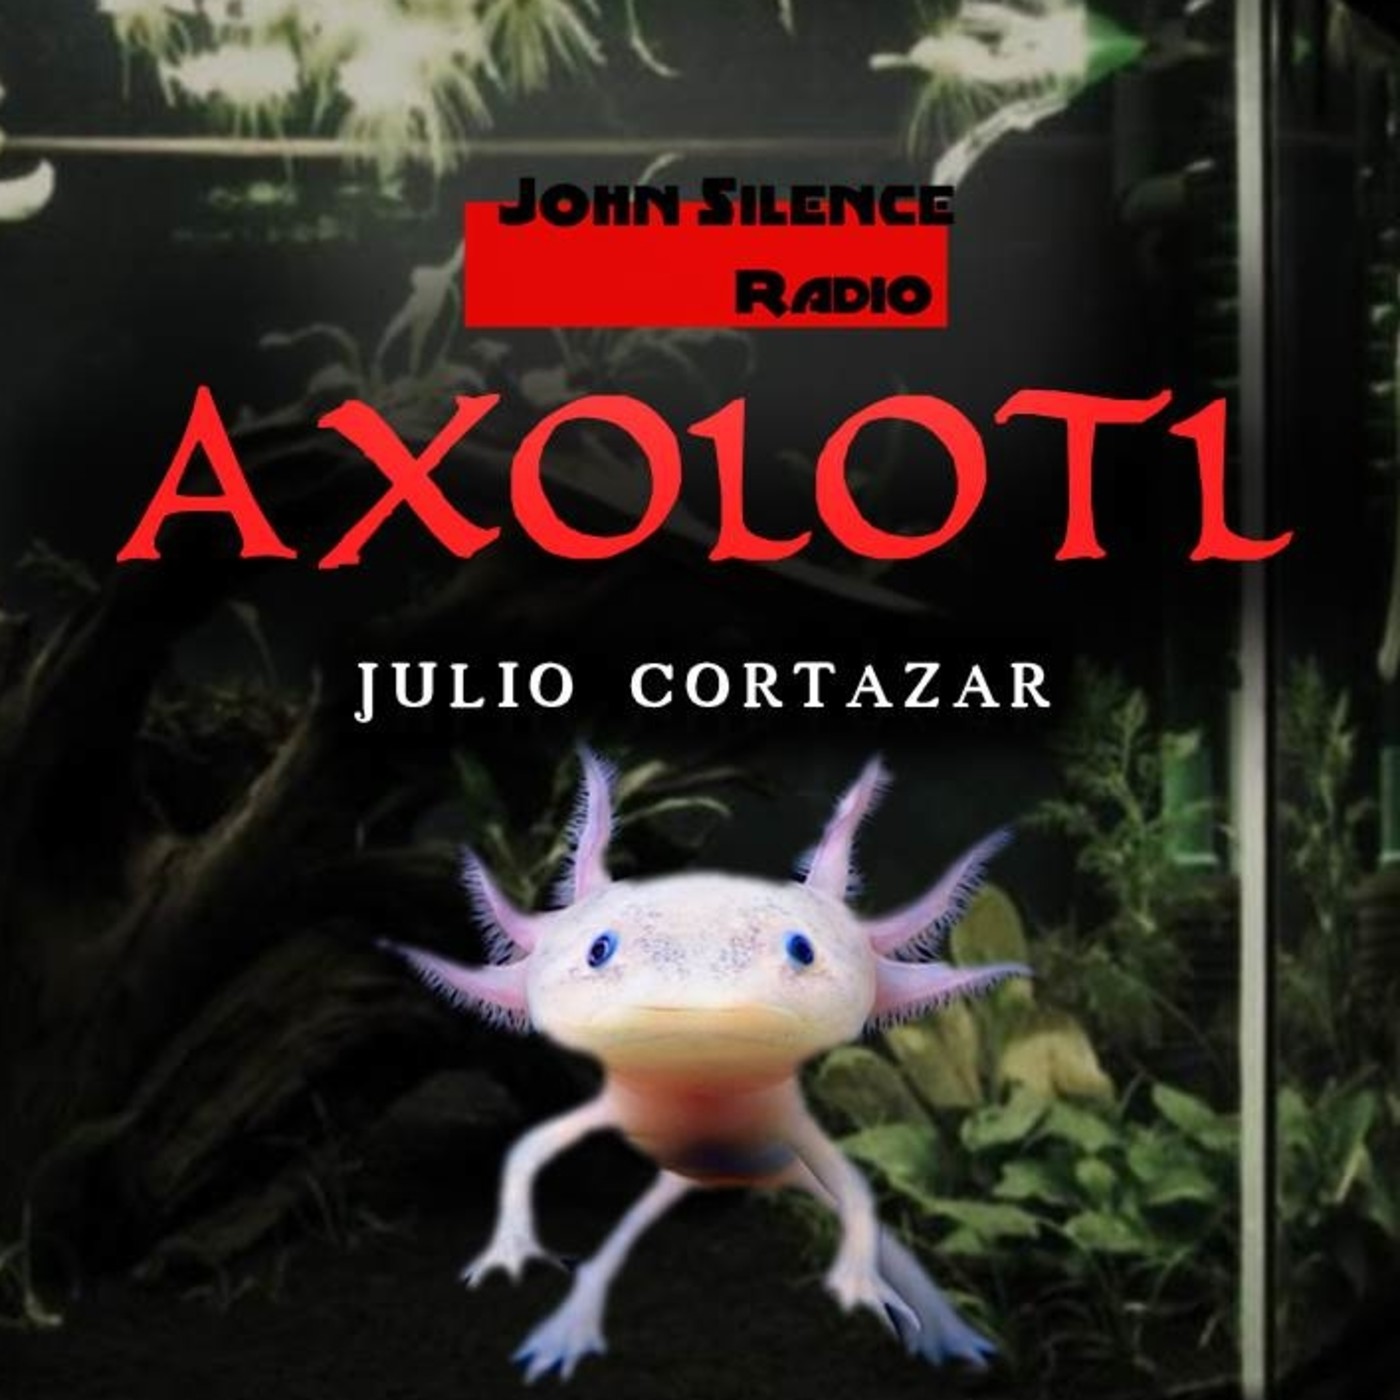 axolotl julio cortazar pdf